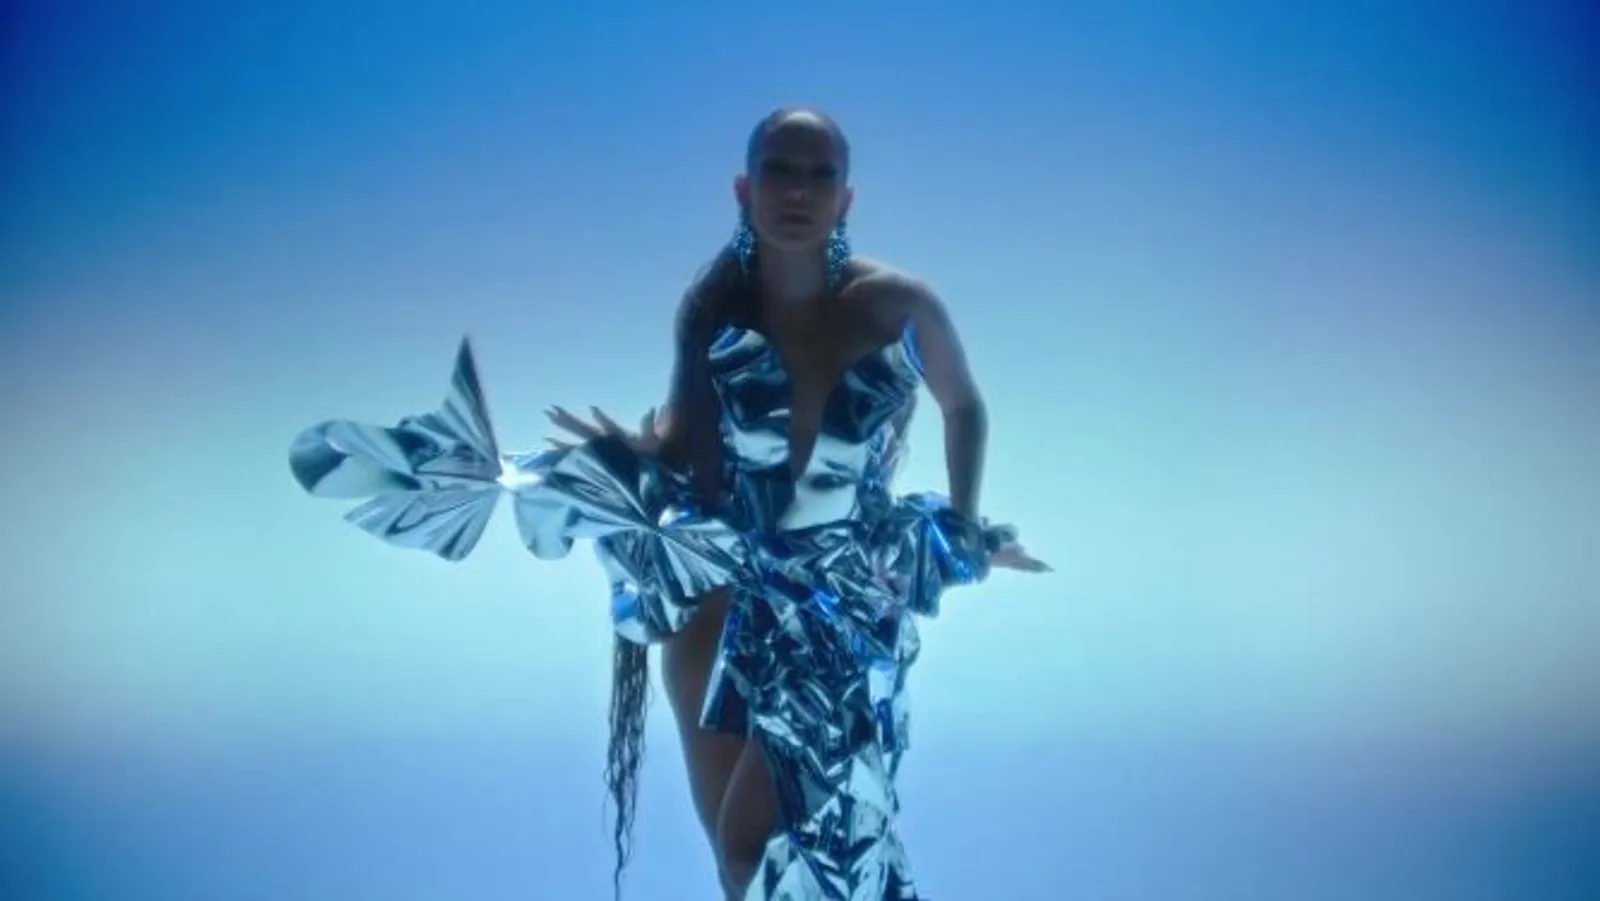 Jennifer Lopez Tampil Seksi di Video Klip In The Morning